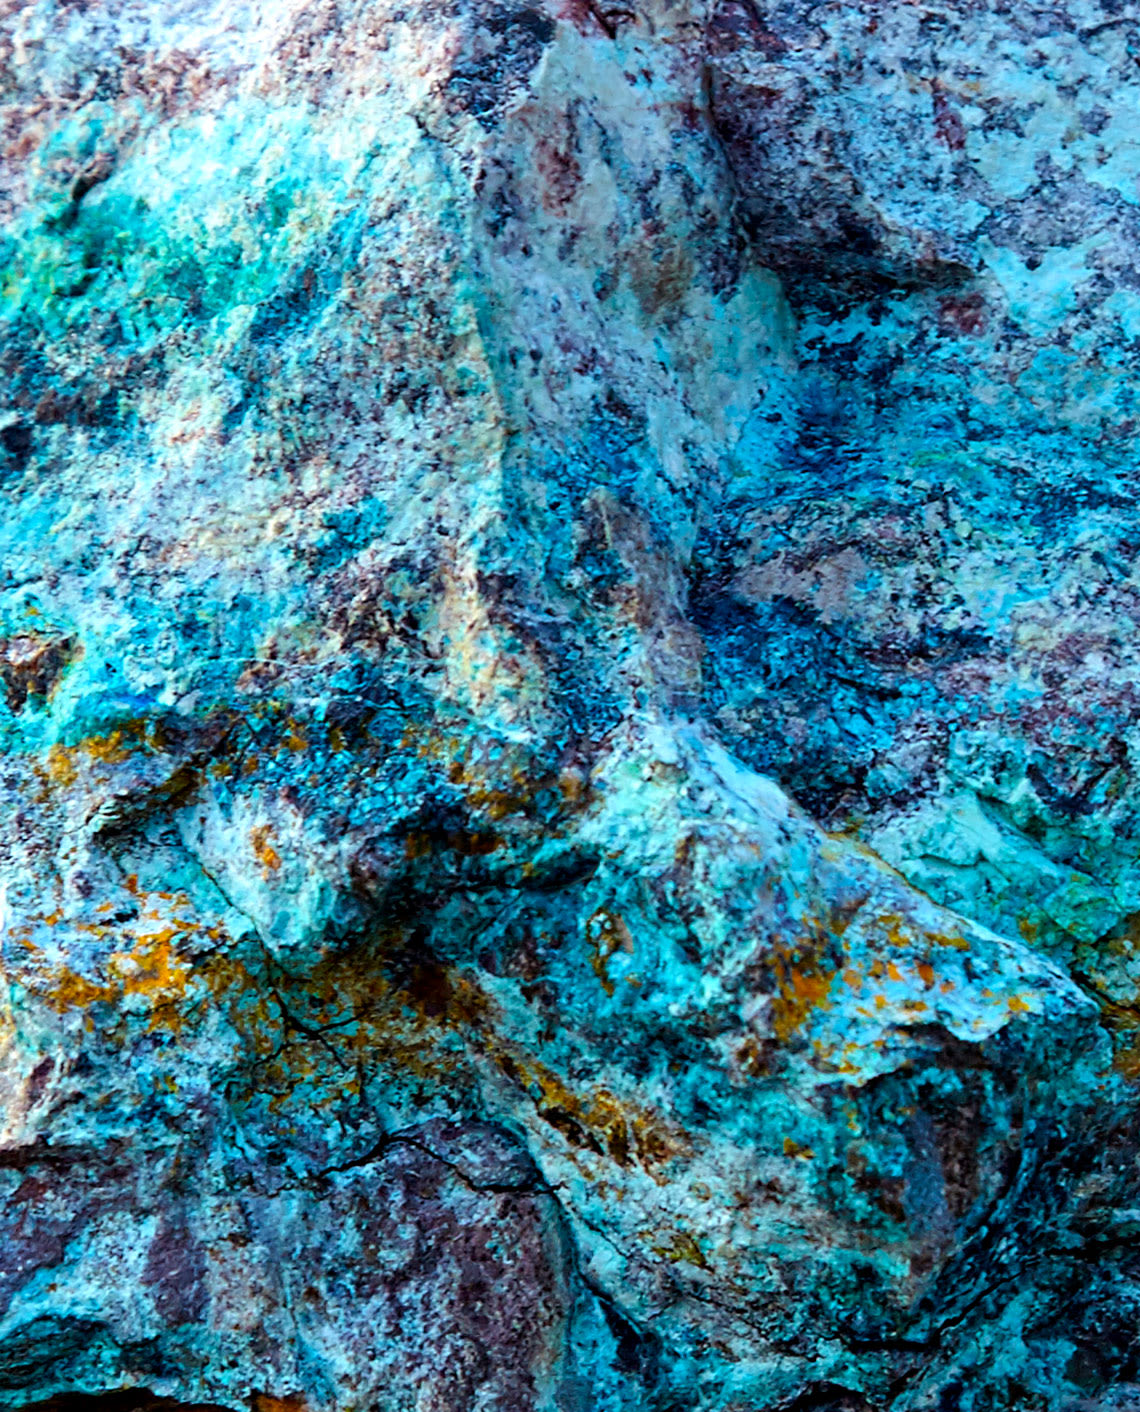 Bright blue raw copper ore